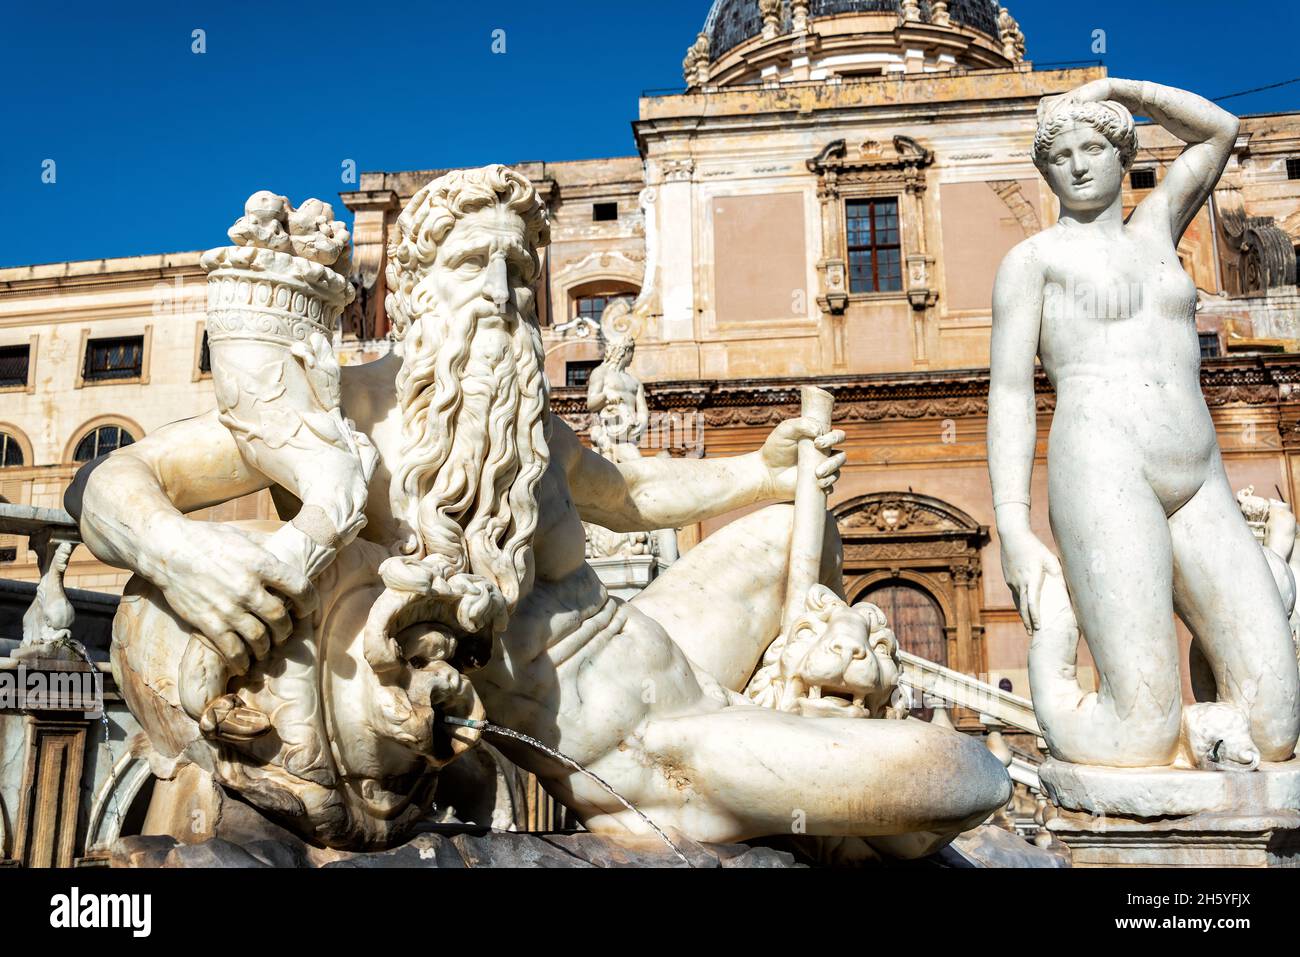 Detalles de la Fuente de Pretoria en Palermo, Italia Foto de stock